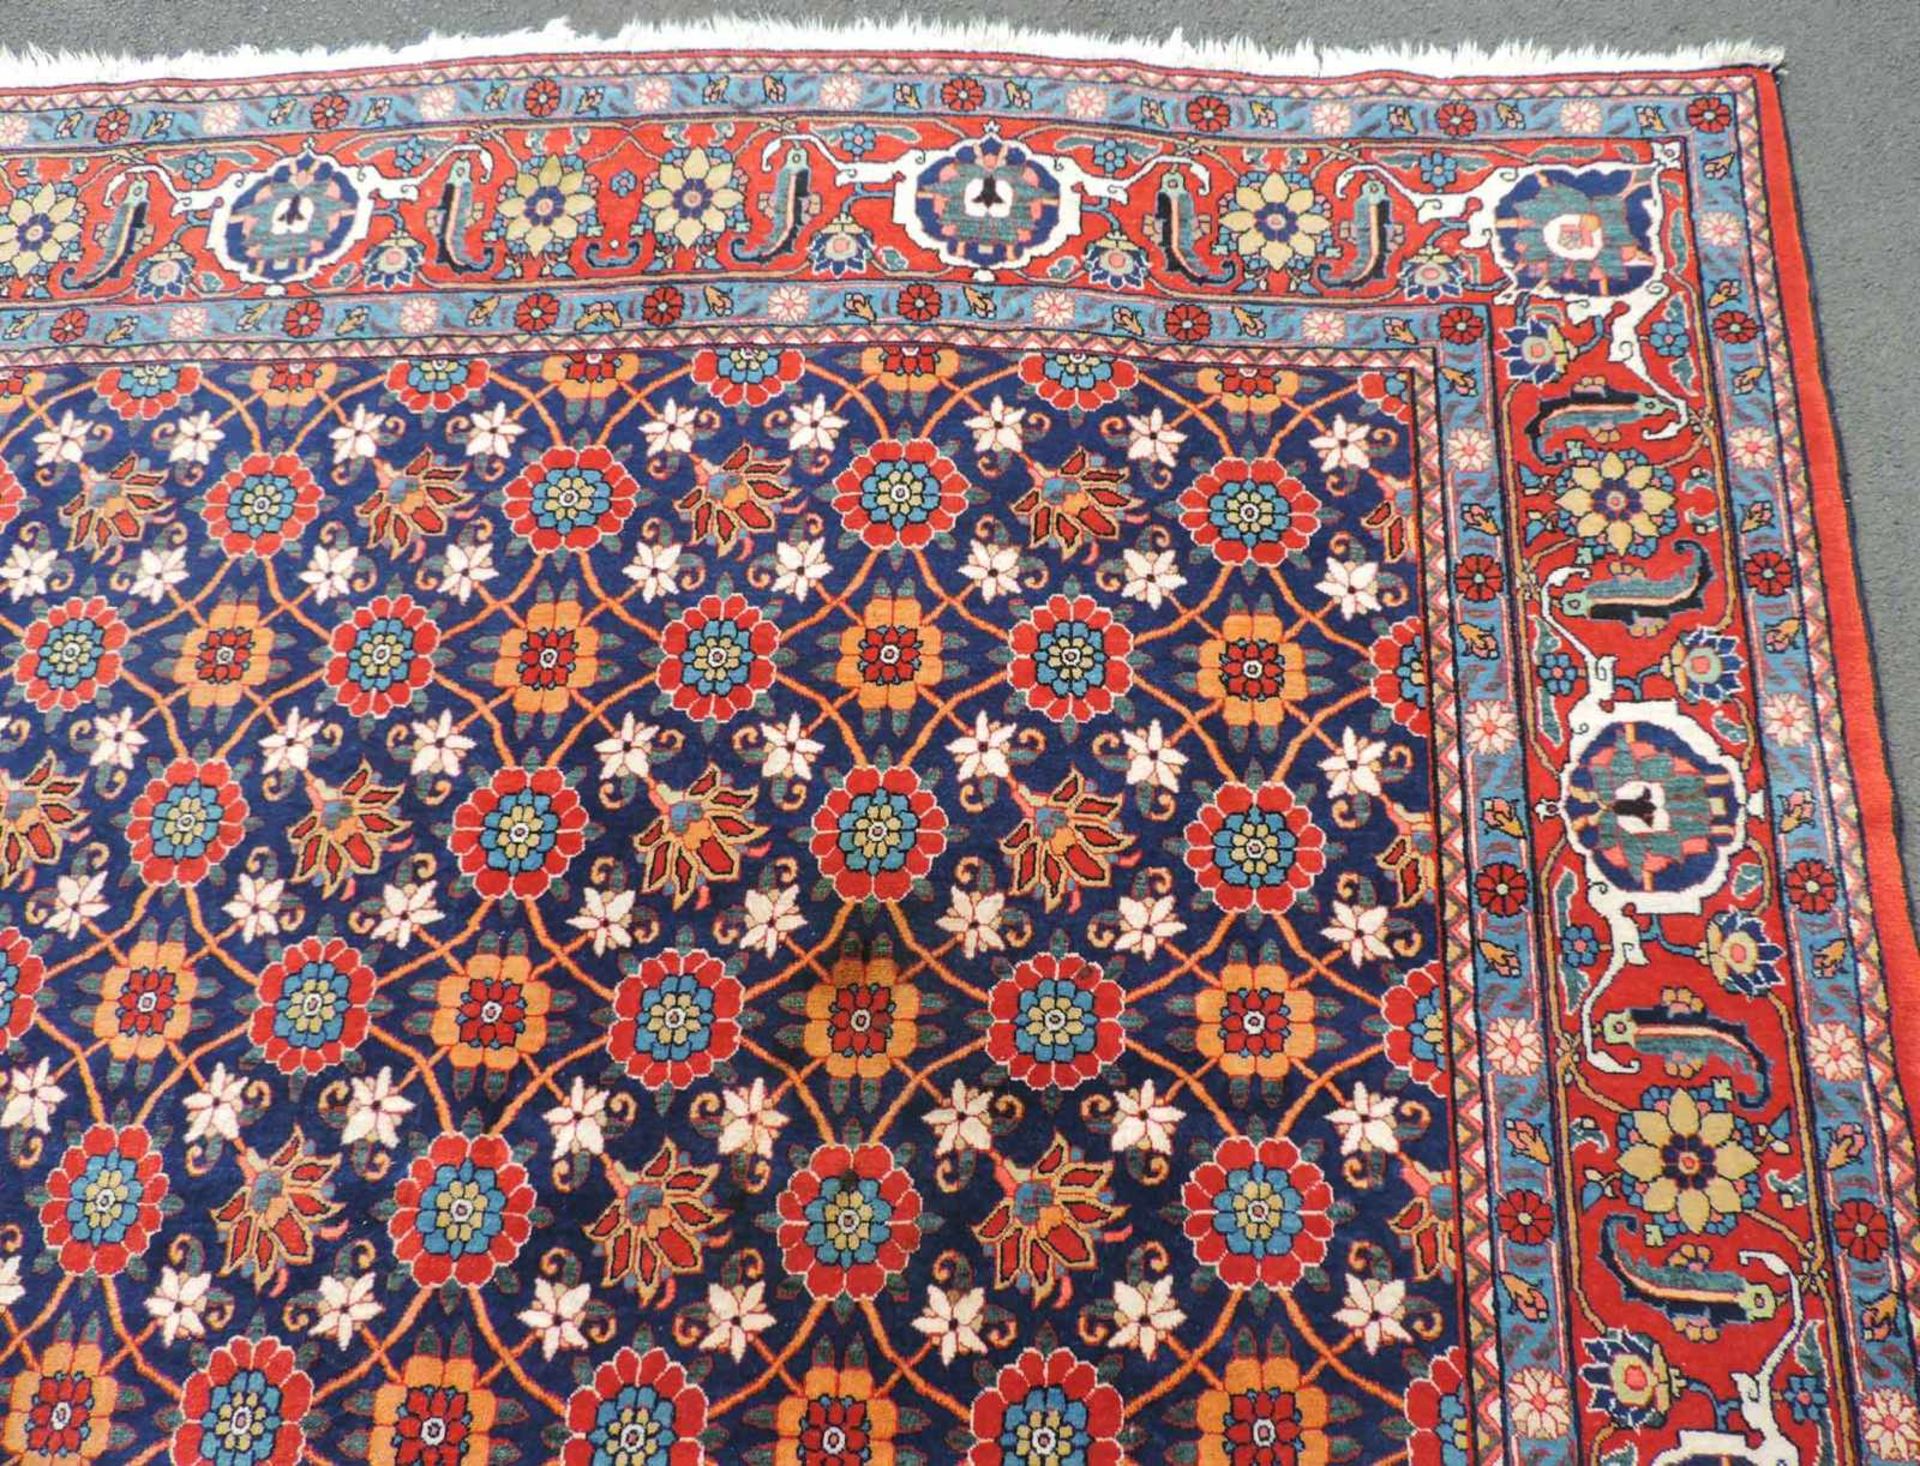 Weramin Manfakturteppich. Iran, alt, um 1940. 308 cm x 210 cm. Handgeknüpft. Wolle auf Baumwolle. - Bild 5 aus 7